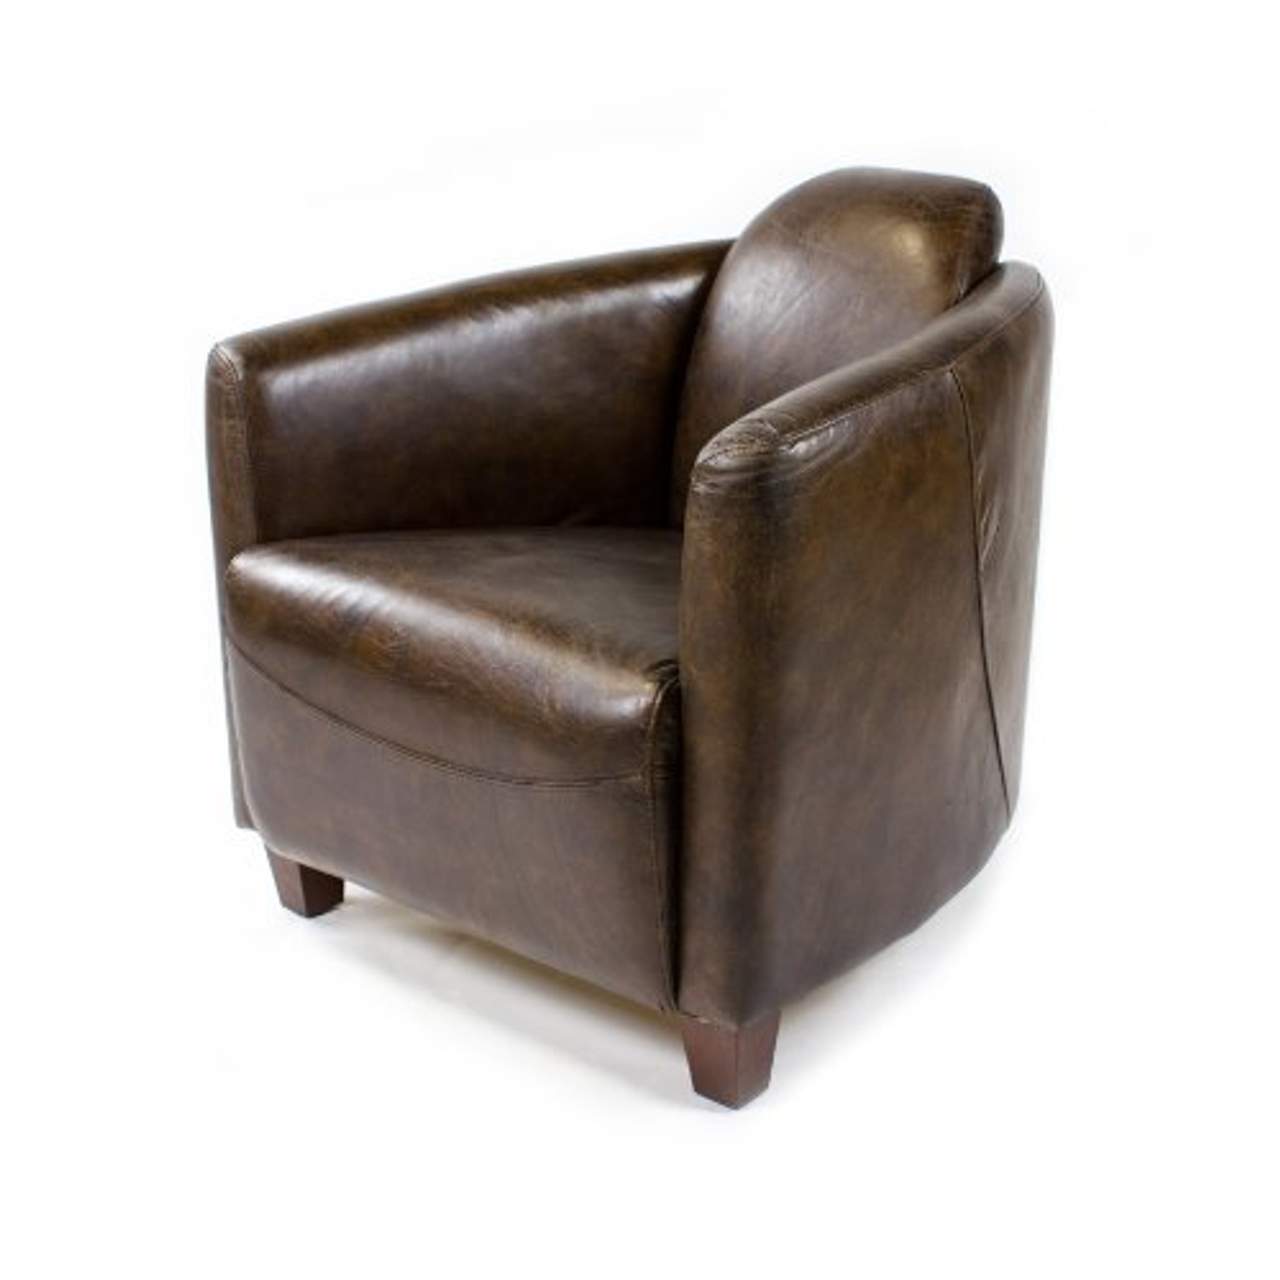 Phoenixarts Echtleder Vintage Sessel Ledersessel Braun Design Lounge